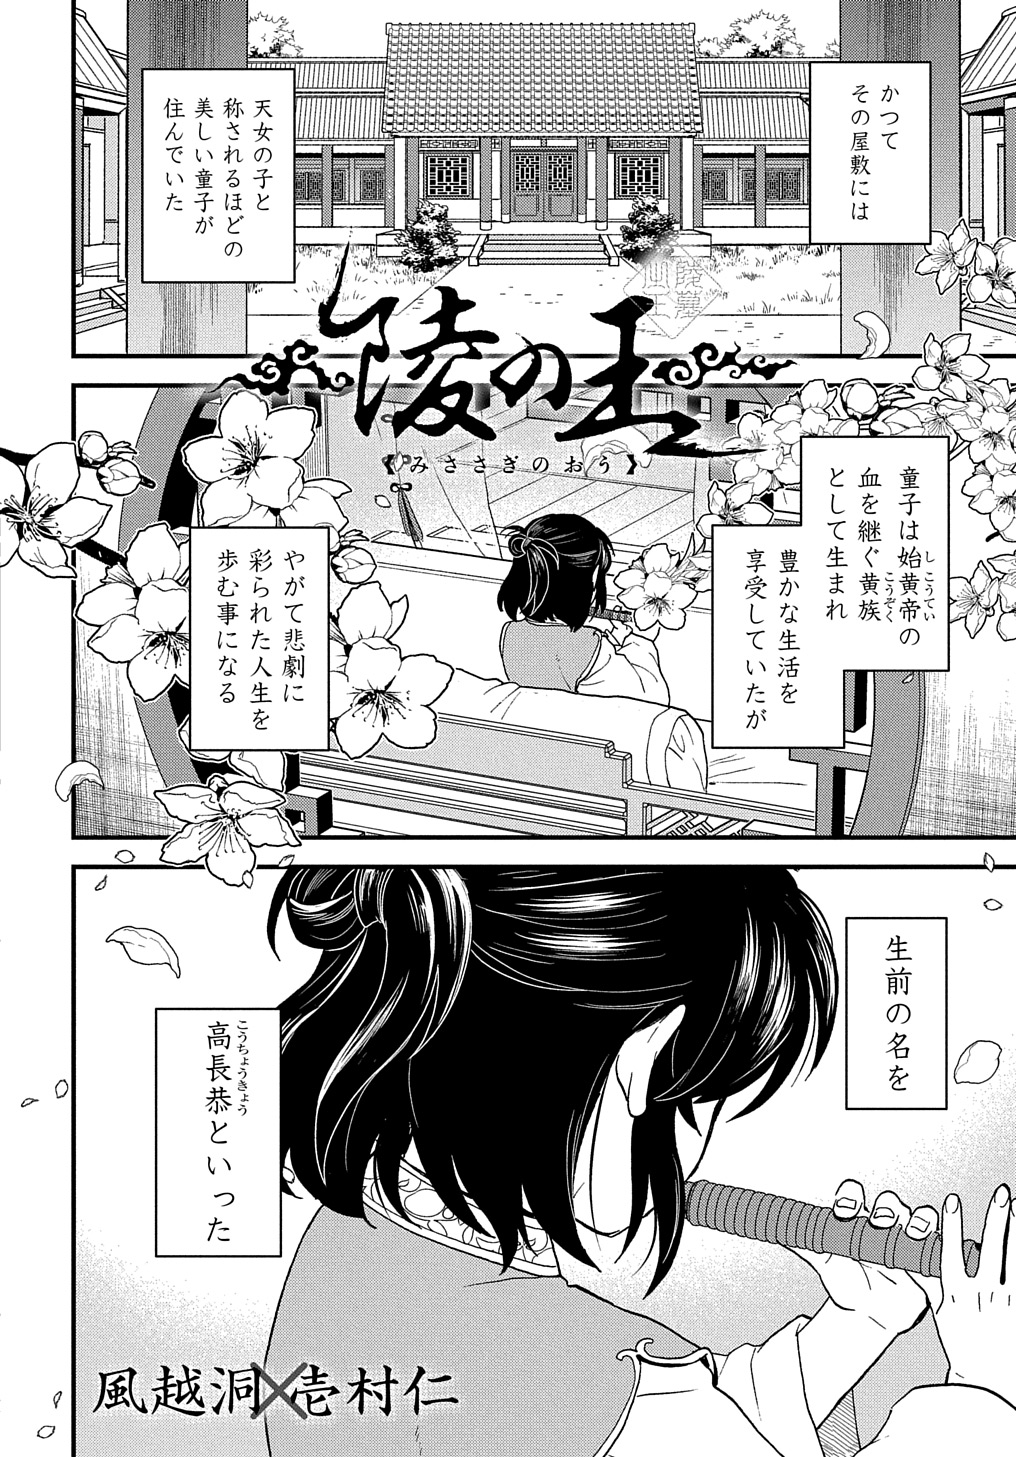 Misasagi no Ou - Chapter 2 - Page 1